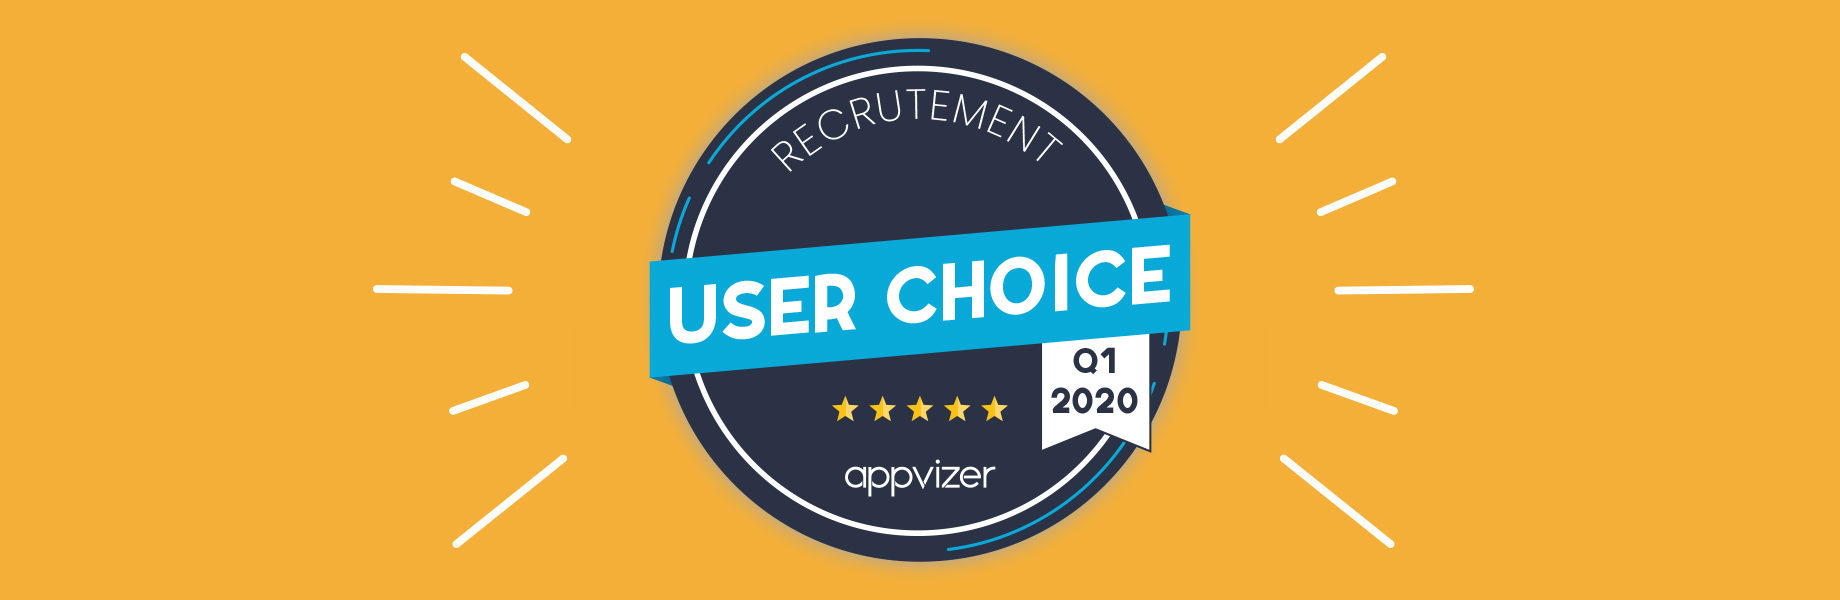 Pourquoi un badge User Choice appvizer est attribué à un logiciel ?